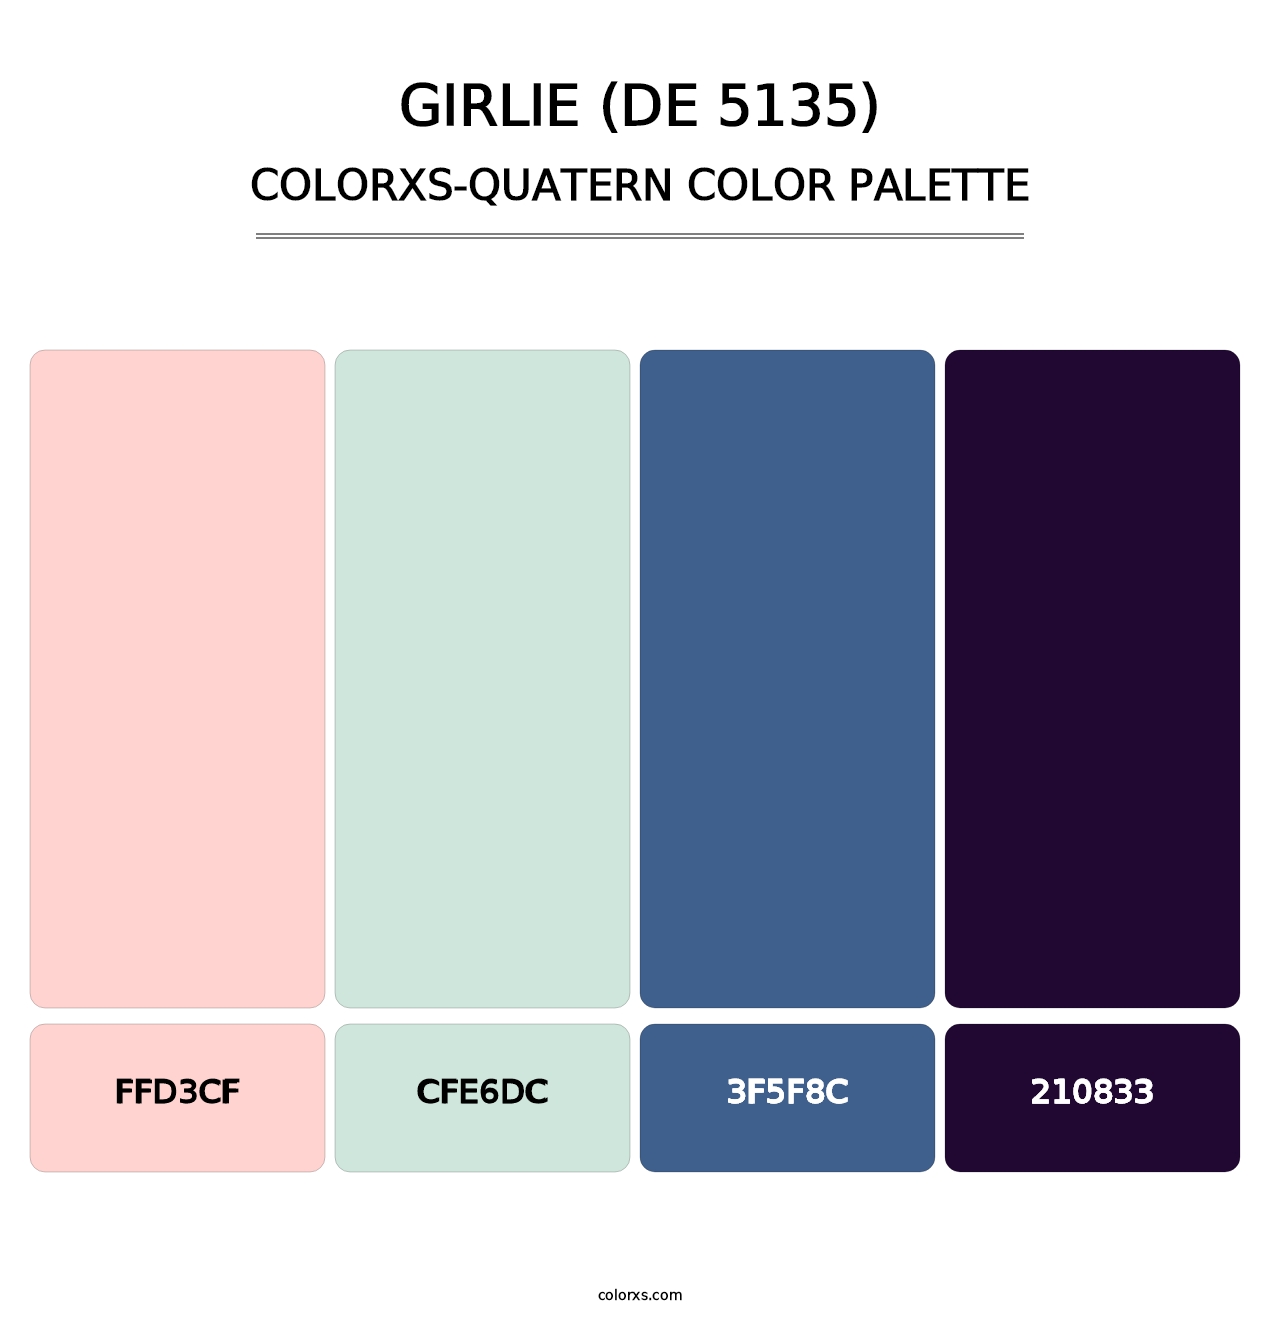 Girlie (DE 5135) - Colorxs Quatern Palette